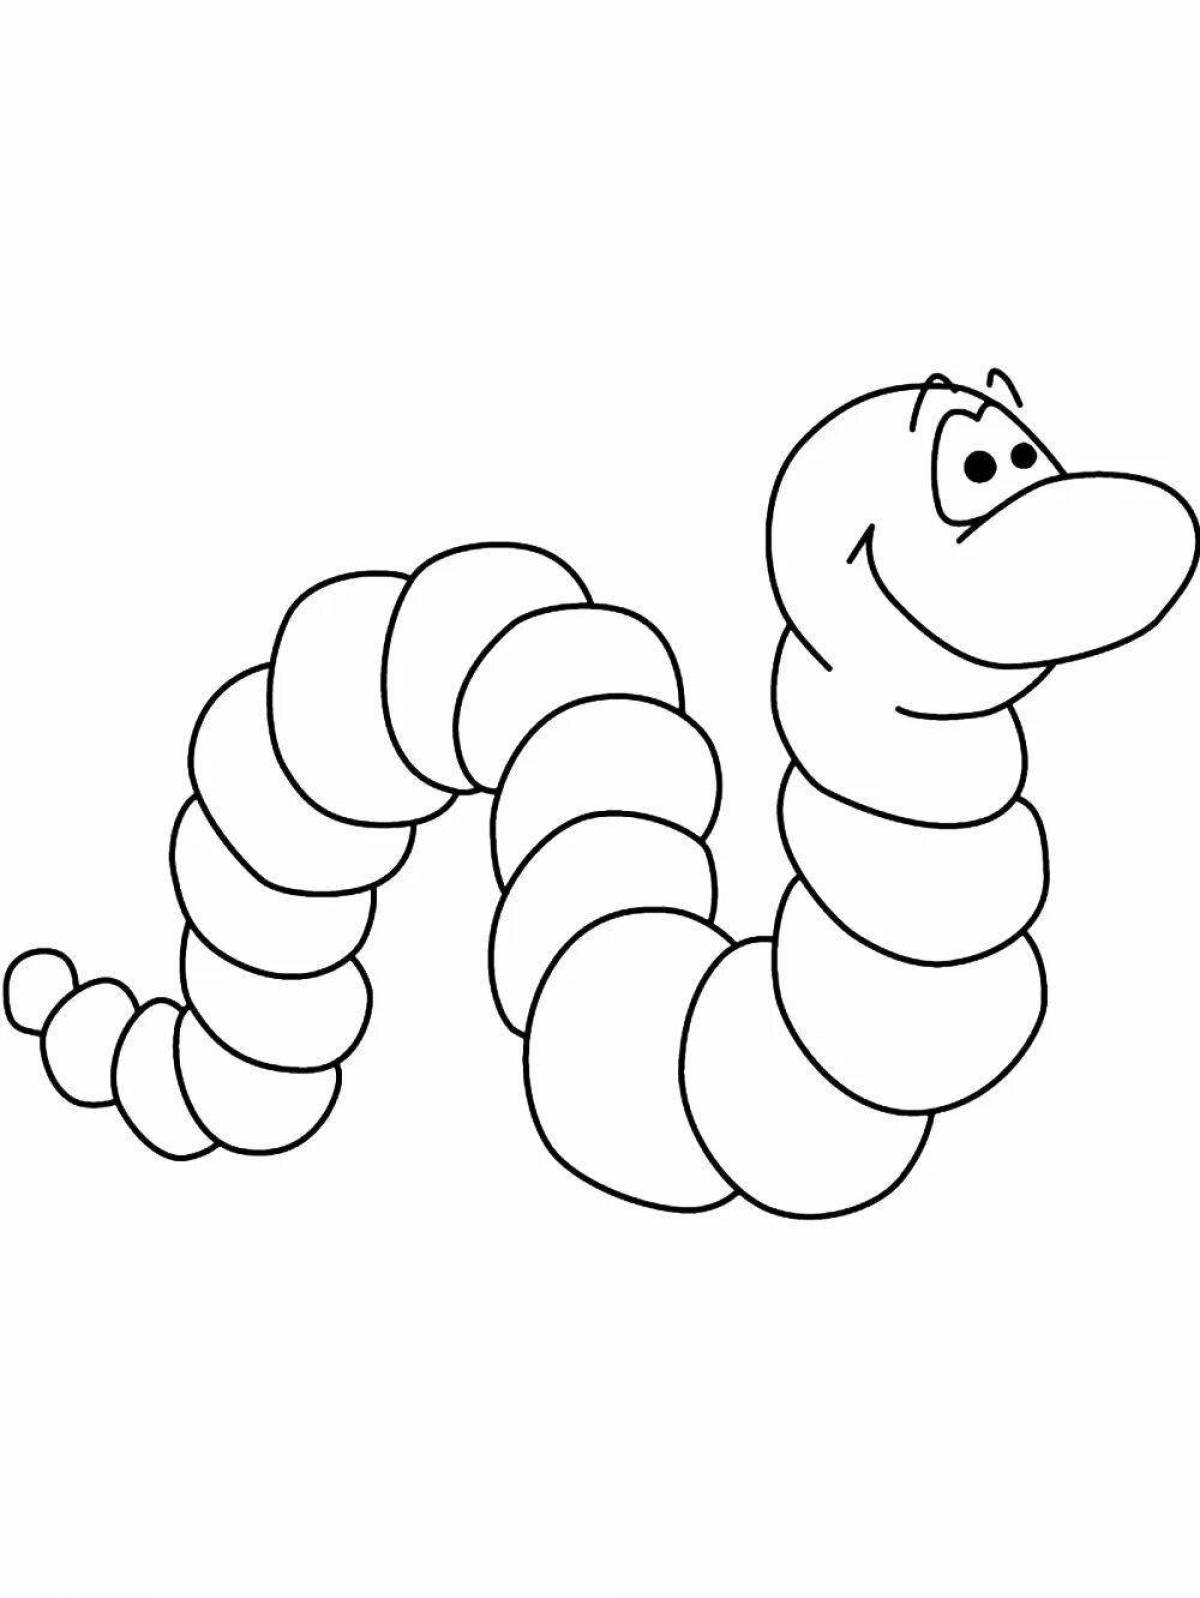 Веселая раскраска червя для детей